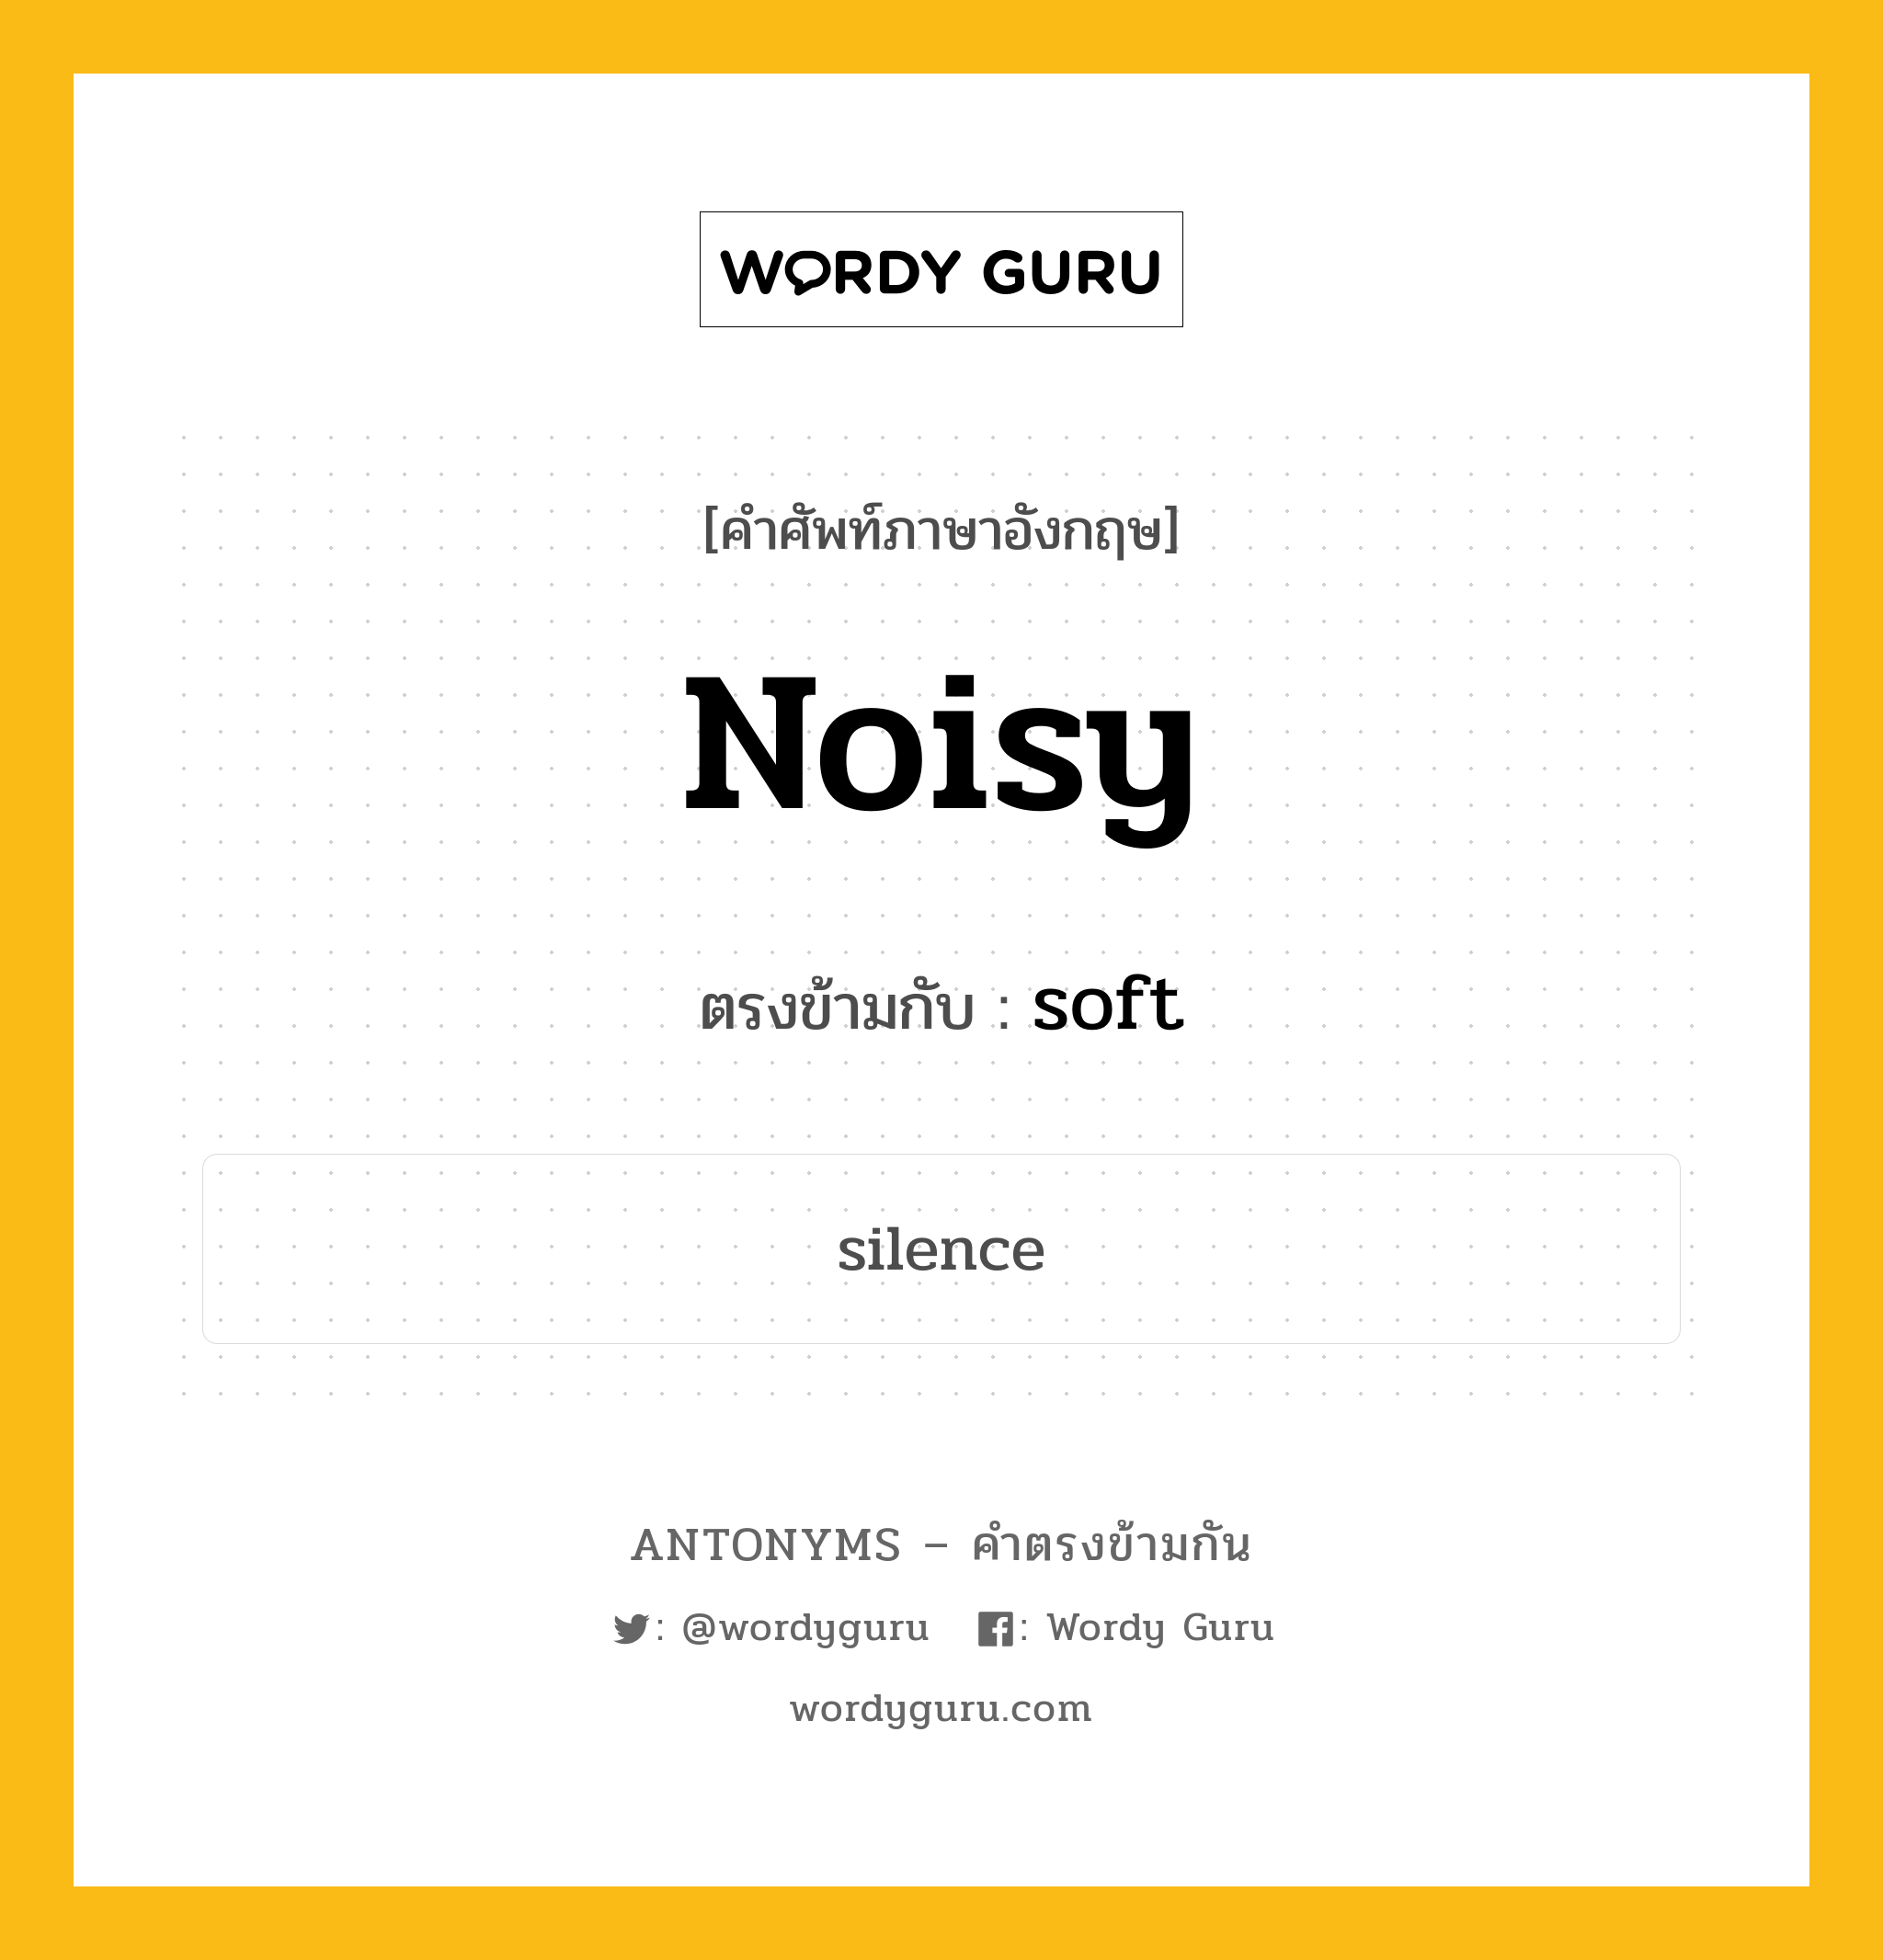 noisy เป็นคำตรงข้ามกับคำไหนบ้าง?, คำศัพท์ภาษาอังกฤษ noisy ตรงข้ามกับ soft หมวด soft